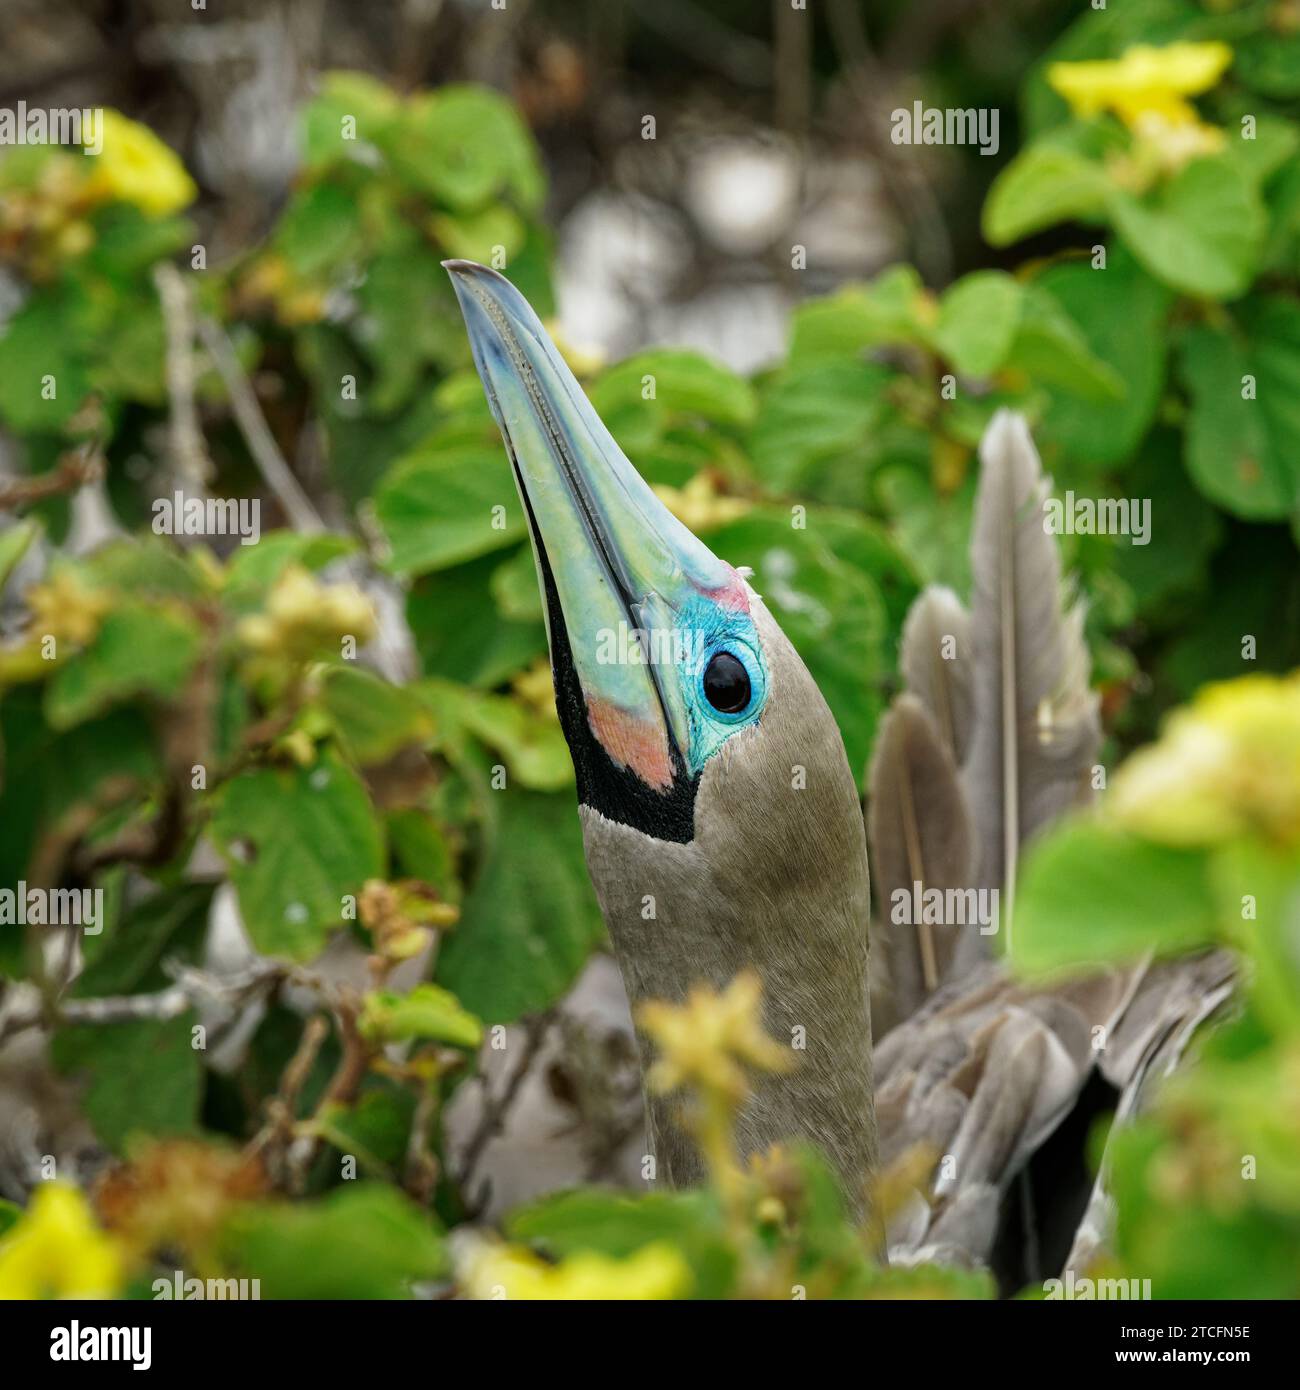 A baby or juvenile red-footed booby hiding under a bush at El Barranco, Genovesa Island, Galápagos Islands, Ecuador Stock Photo